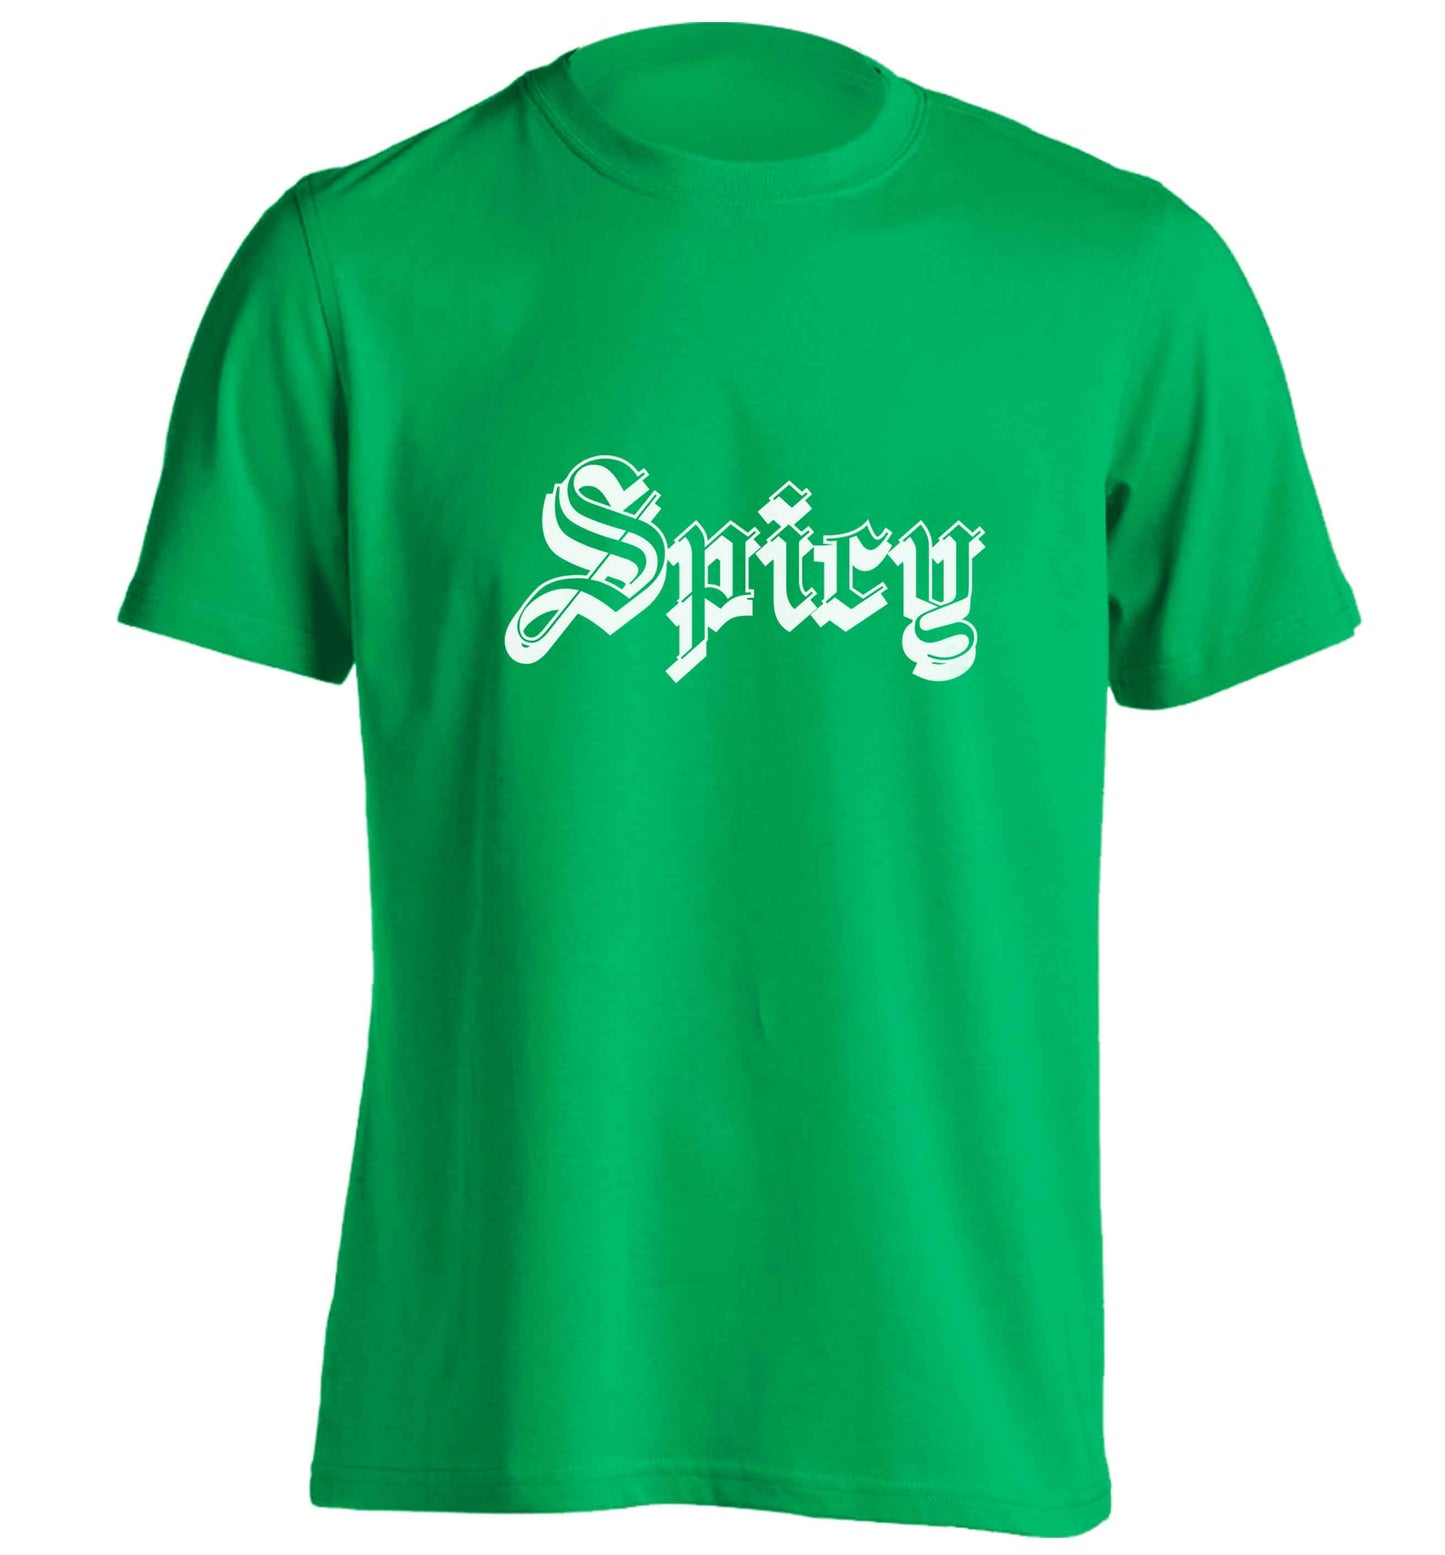 Spicy adults unisex green Tshirt 2XL